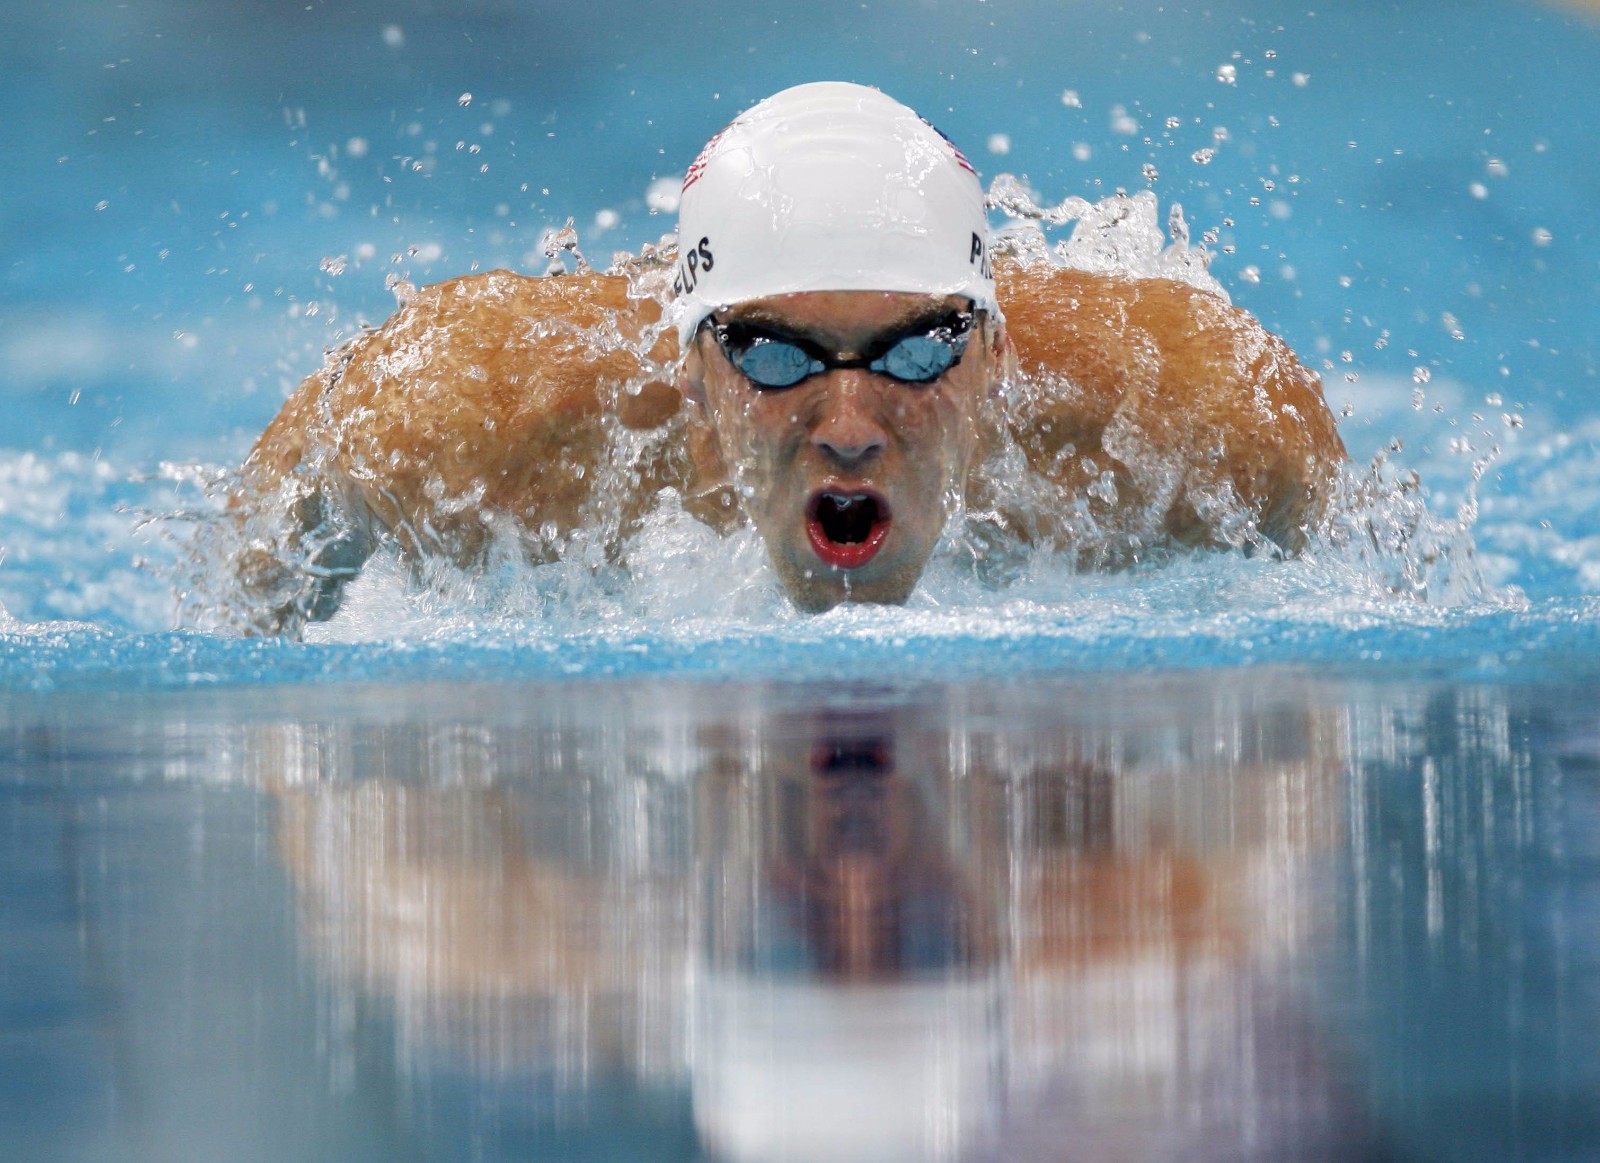 菲尔普斯的世界纪录被13岁男孩打破!游泳界的